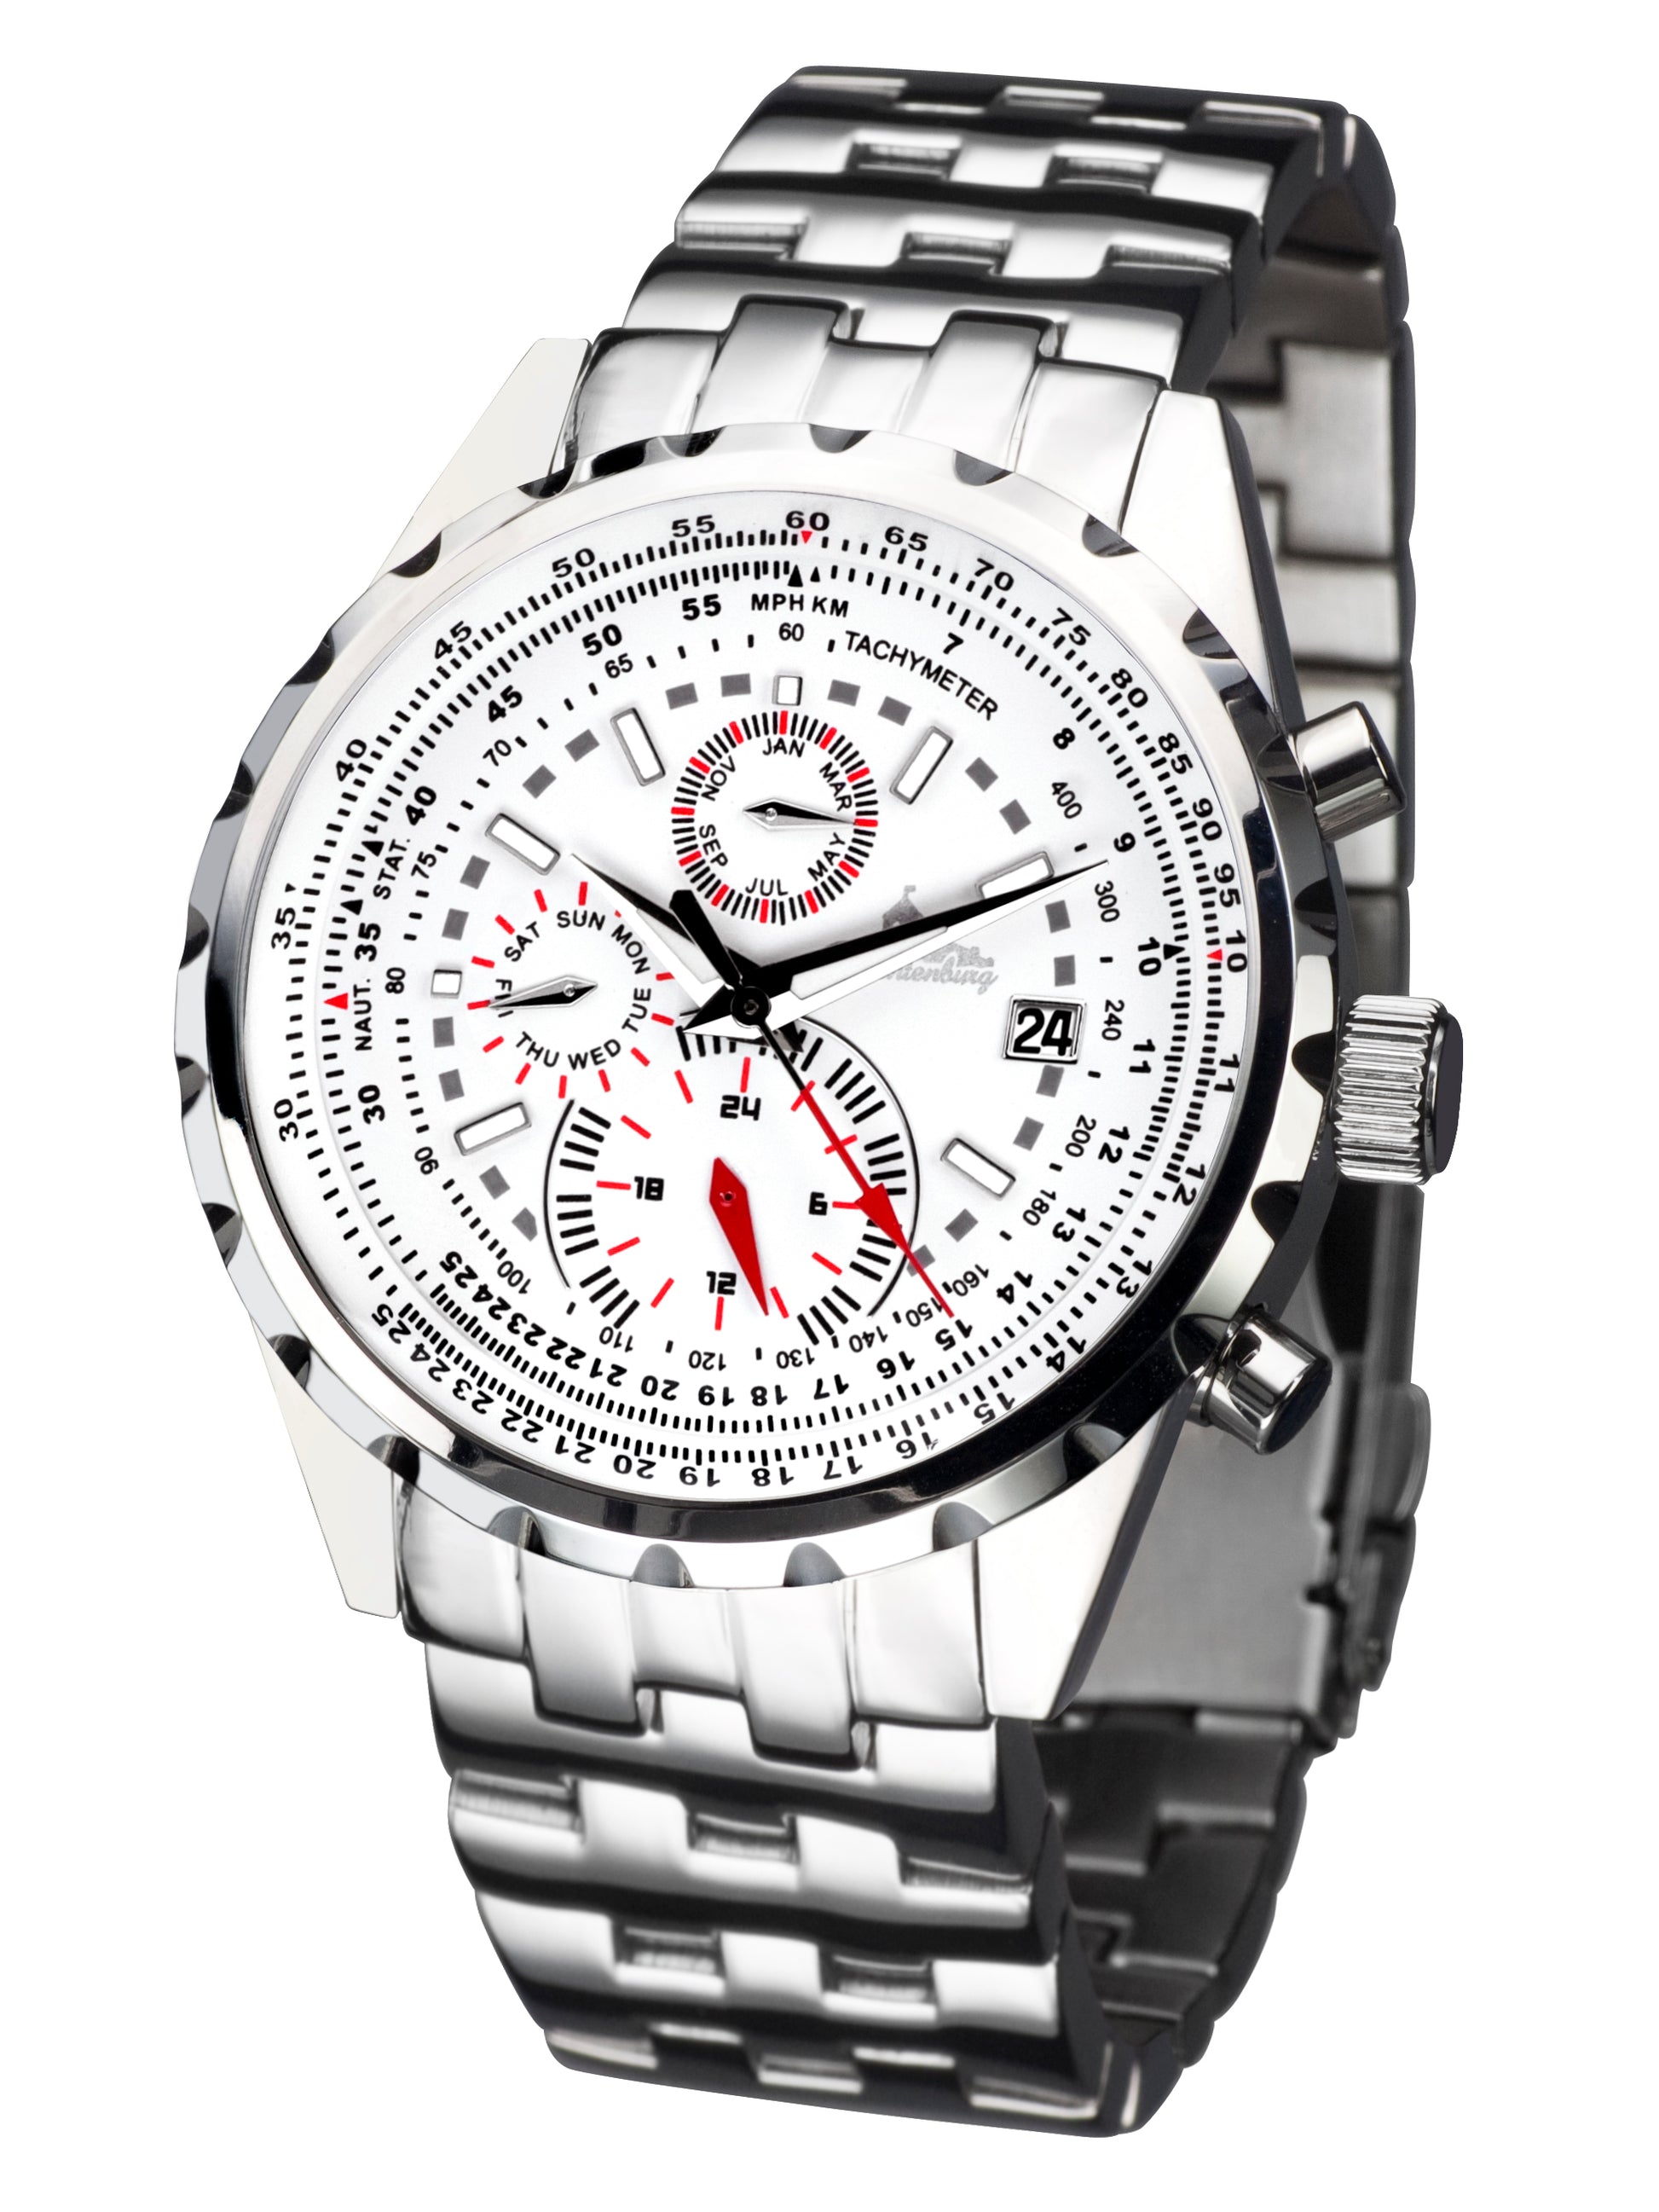 Automatic watches — Stahlfighter — Richtenburg — white